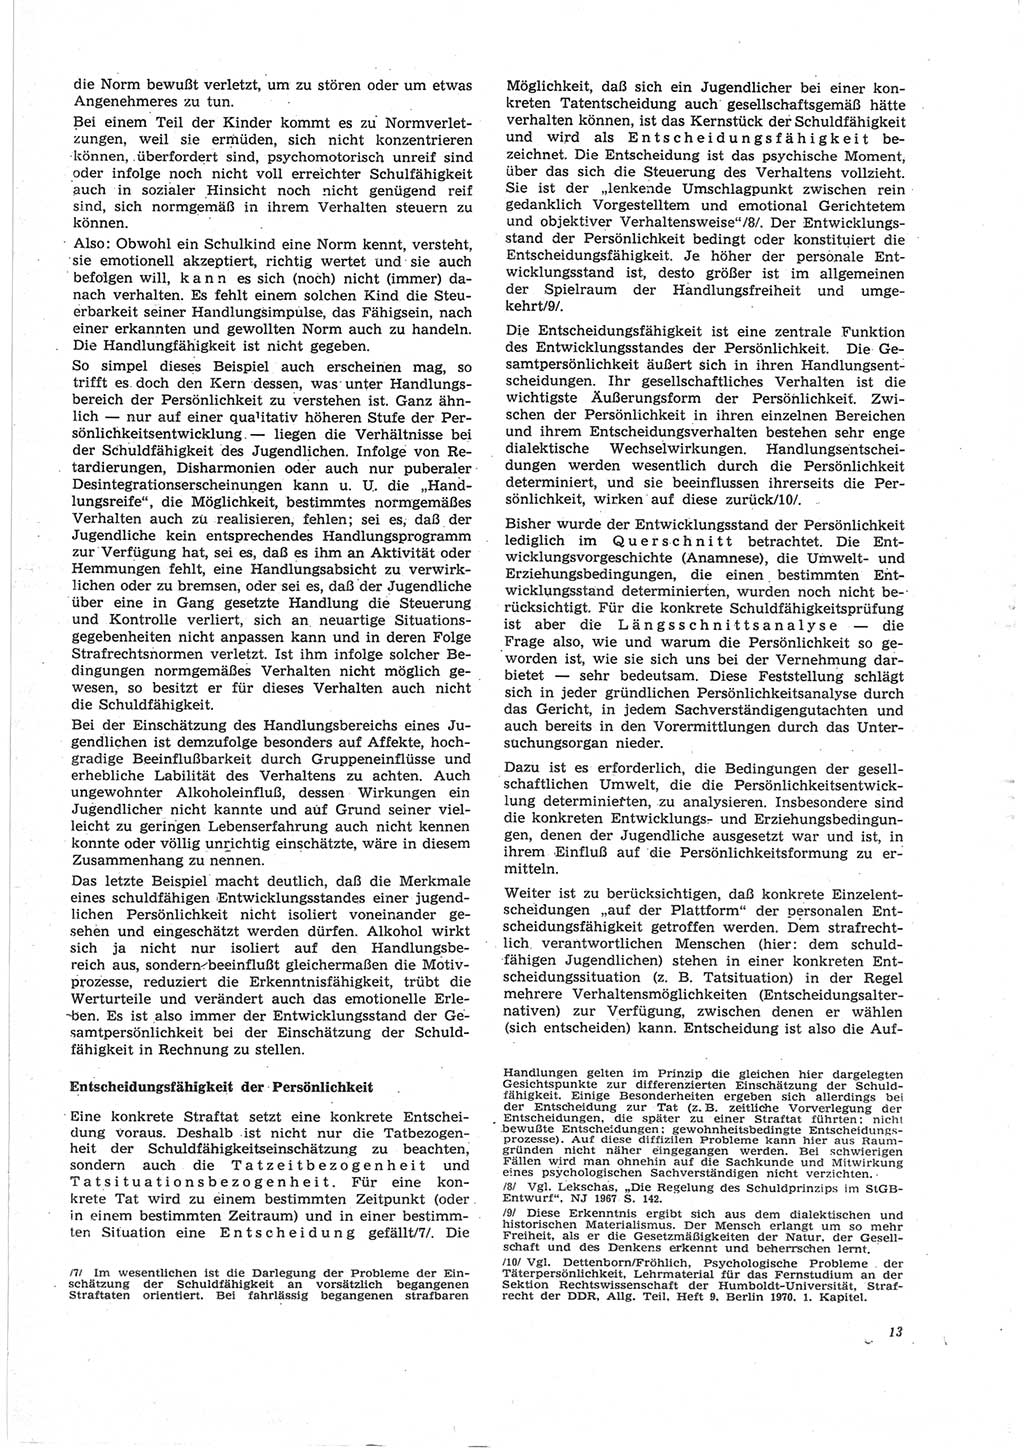 Neue Justiz (NJ), Zeitschrift für Recht und Rechtswissenschaft [Deutsche Demokratische Republik (DDR)], 25. Jahrgang 1971, Seite 13 (NJ DDR 1971, S. 13)